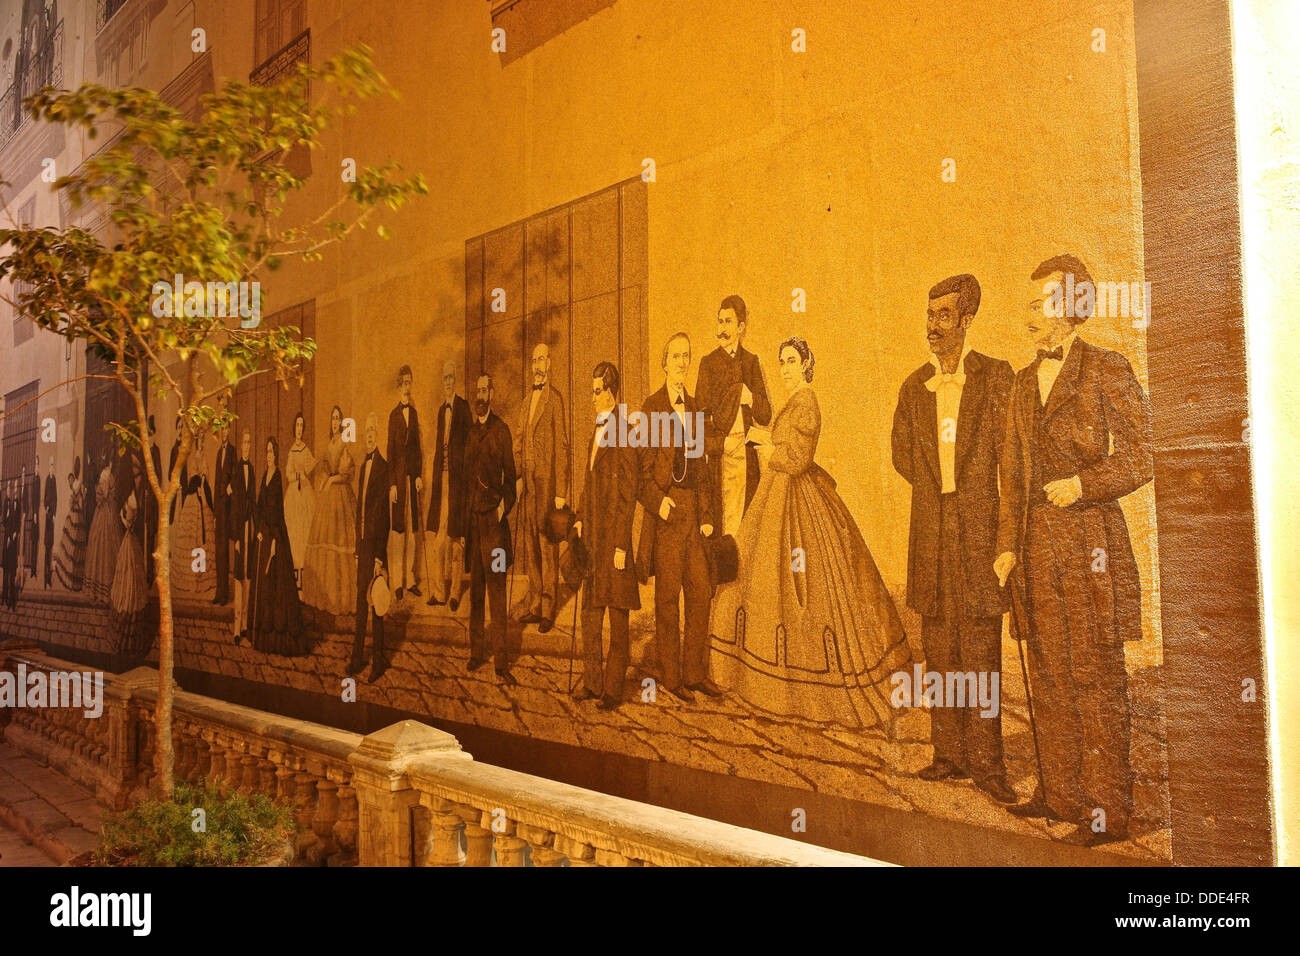 Sable une murale représentant des personnalités de l'histoire de Cuba. Banque D'Images